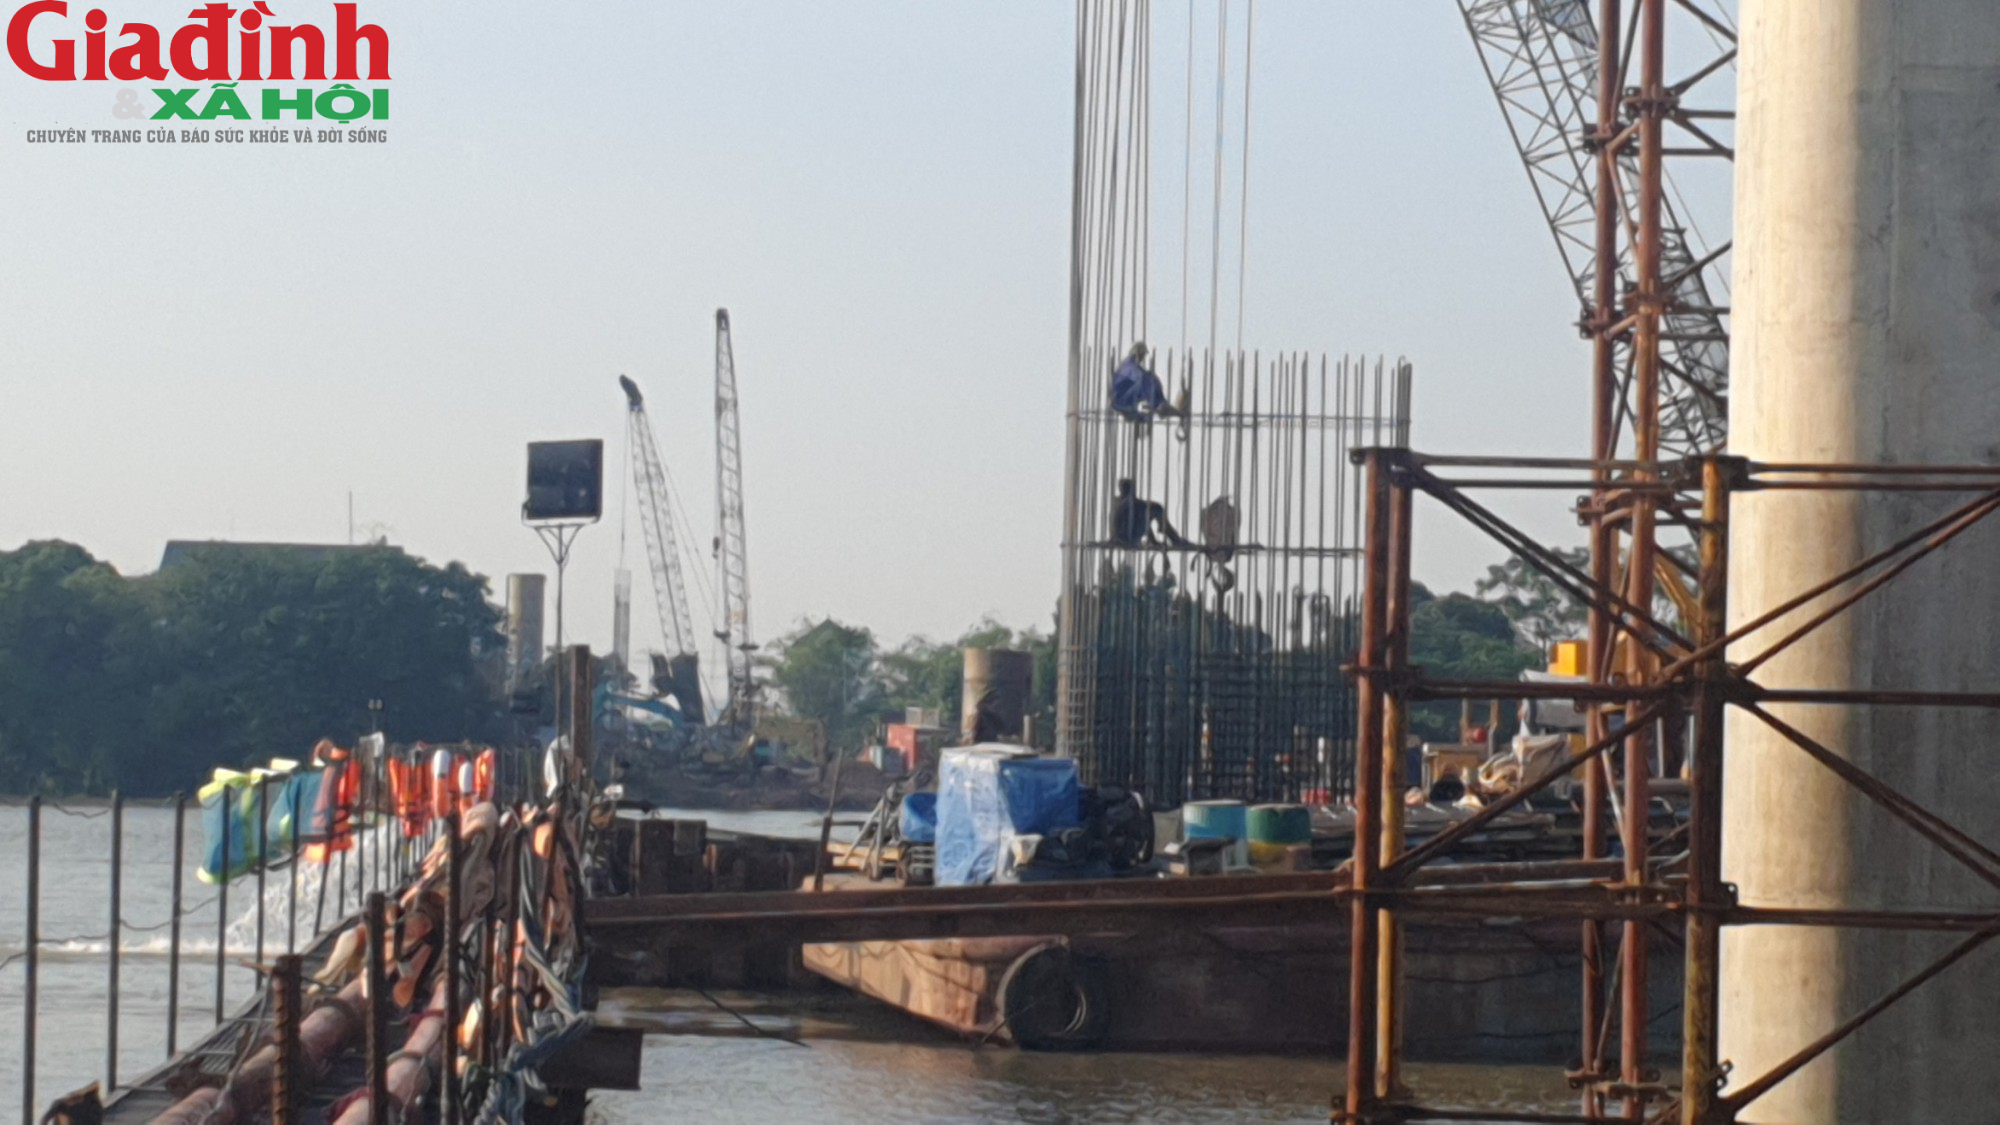 Cận cảnh đại công trình xây dựng cầu Đồng Cao (Nam Định) giữa sông lớn - Ảnh 7.